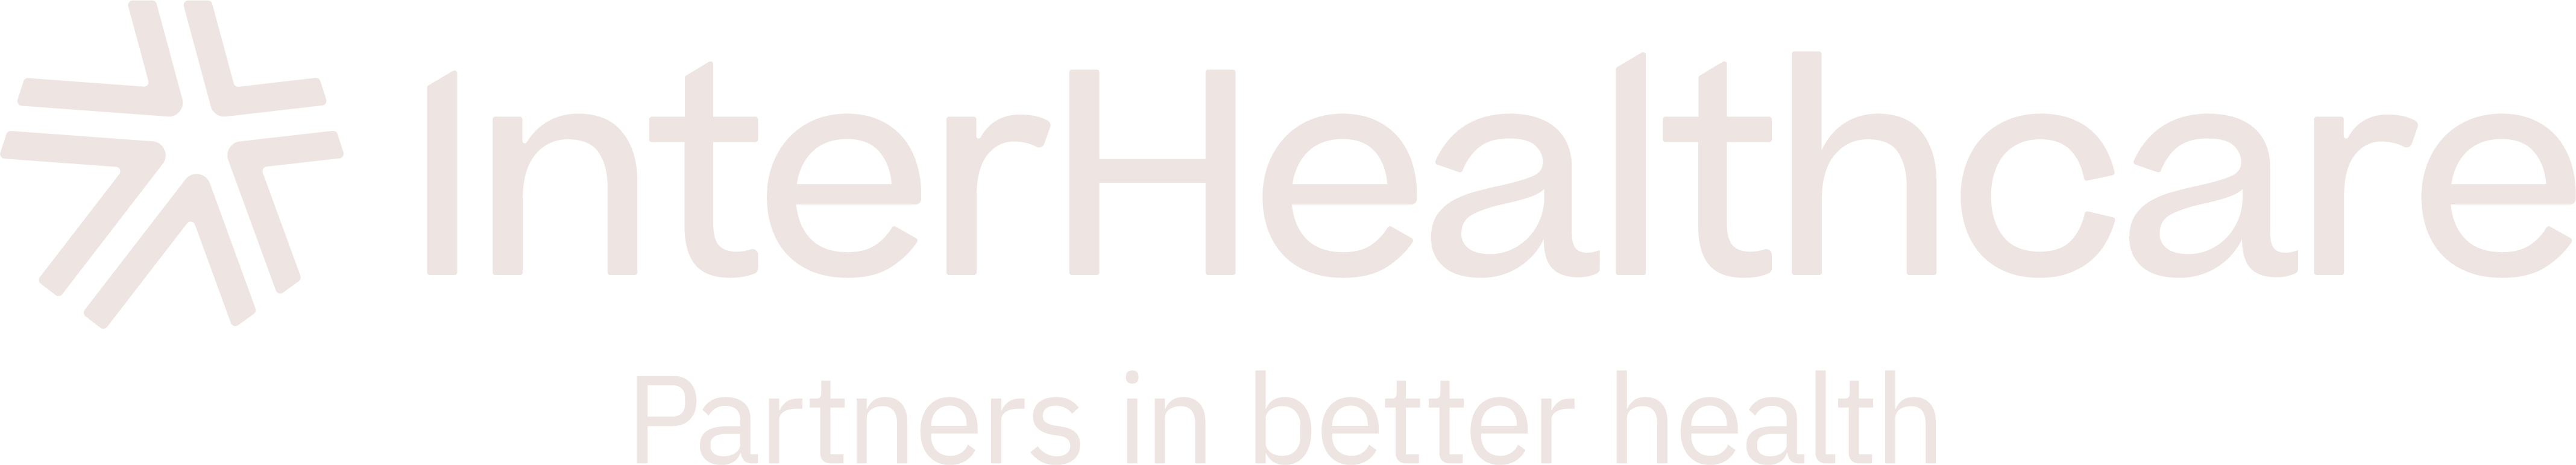 InterHealthcare logo